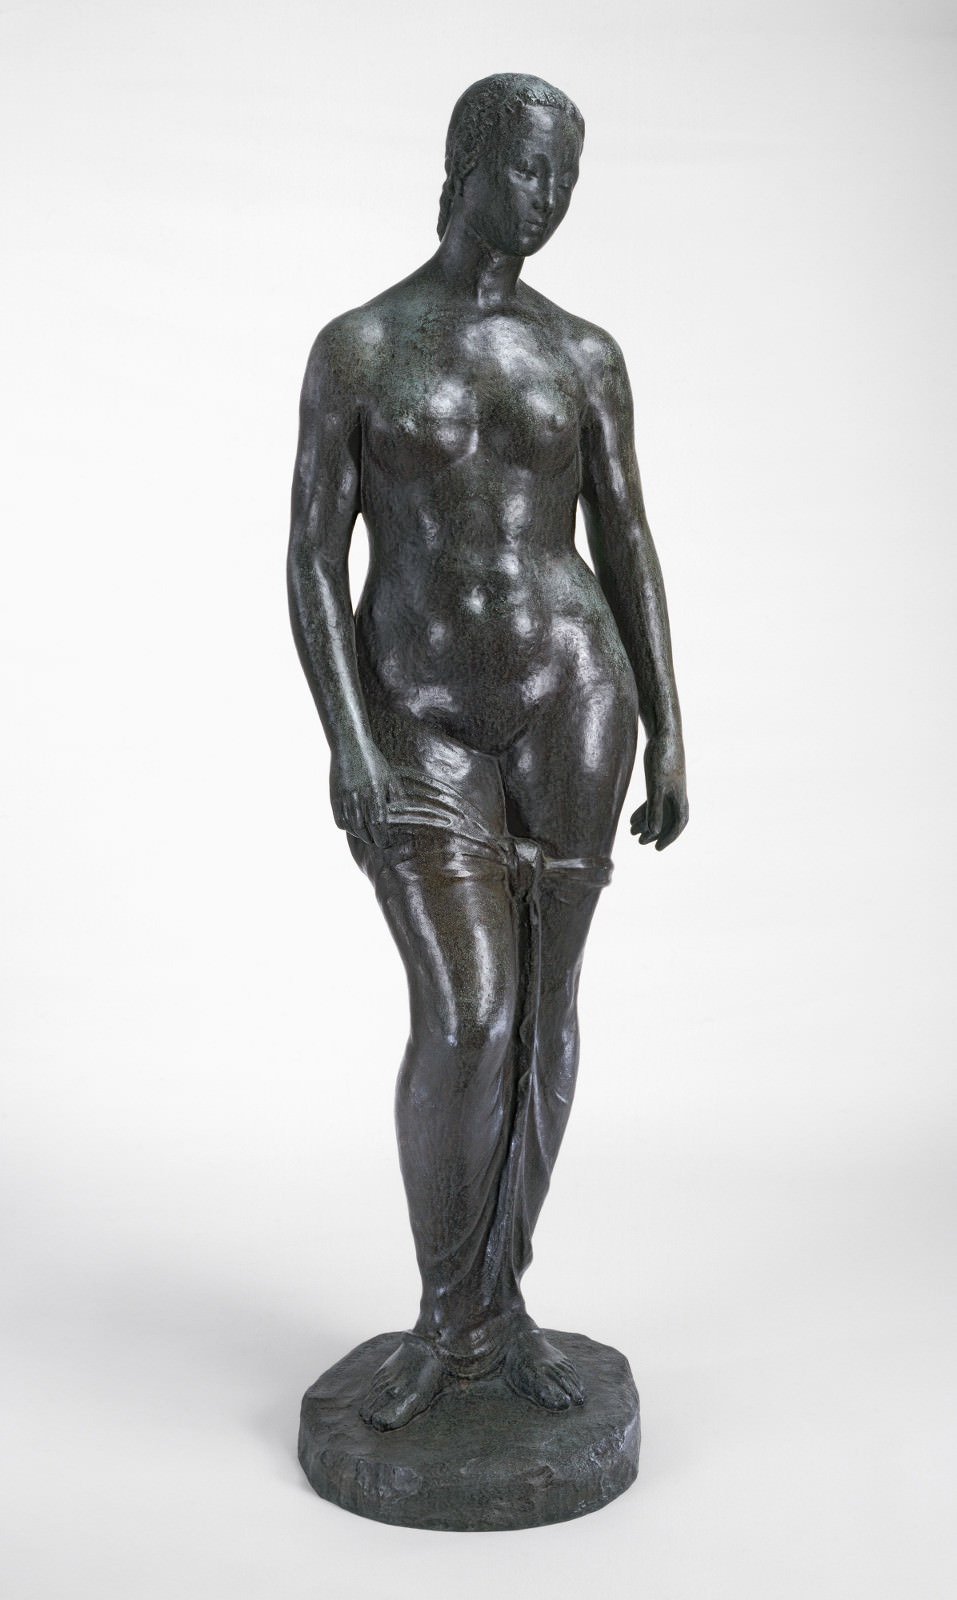 התאנה.. 3 - באדם העומד, וילהלם Lehmbruck, 1910, ברונזה, 191.2 x 54 x 39.9 ס מ. הגלרייה הלאומית לאומנות, וושינגטון. Mellon Ailsa ברוס קרן.